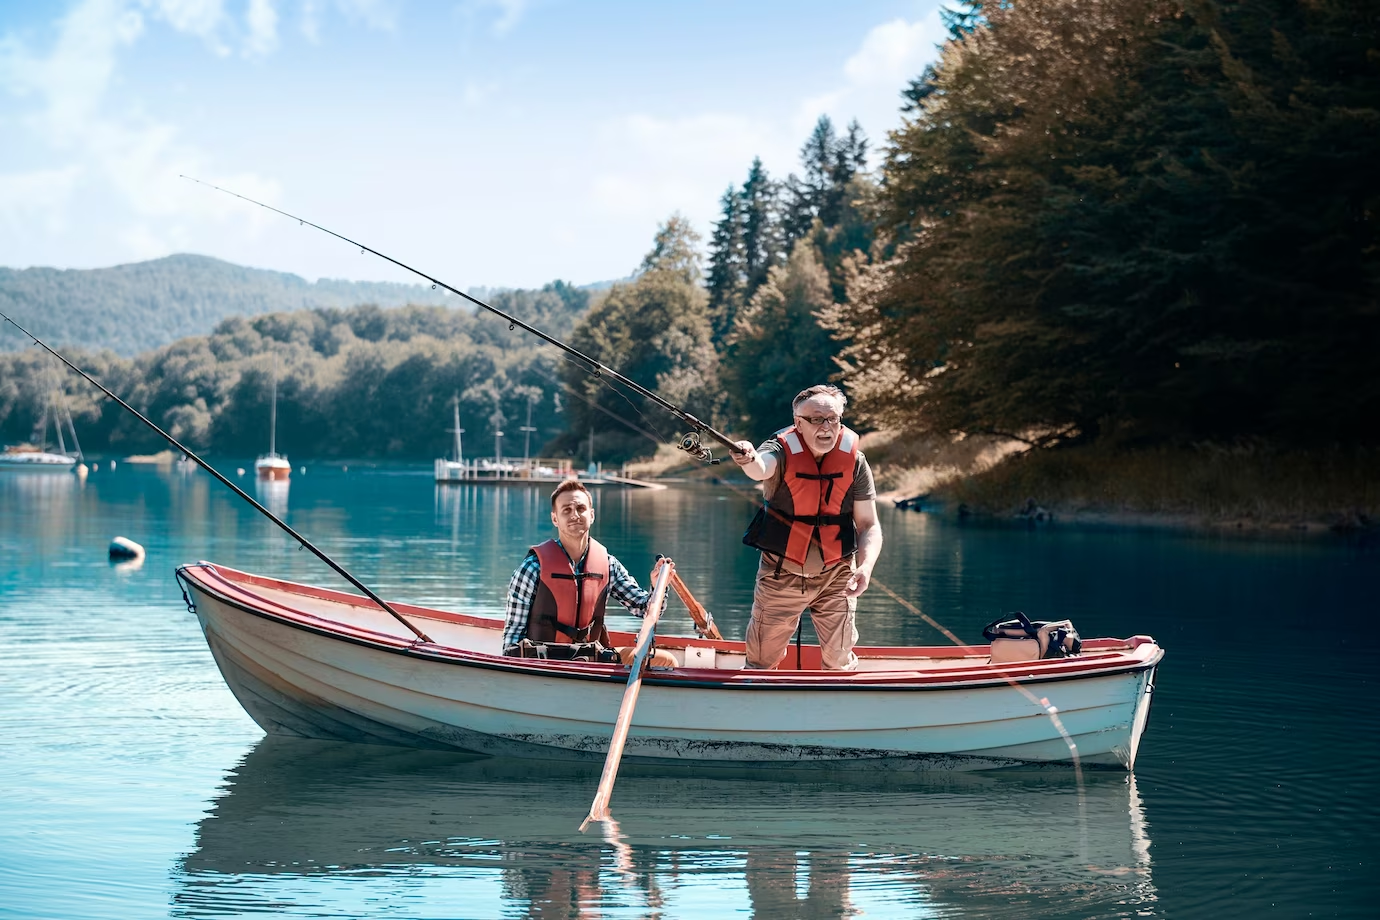 Two men fishing in a boat